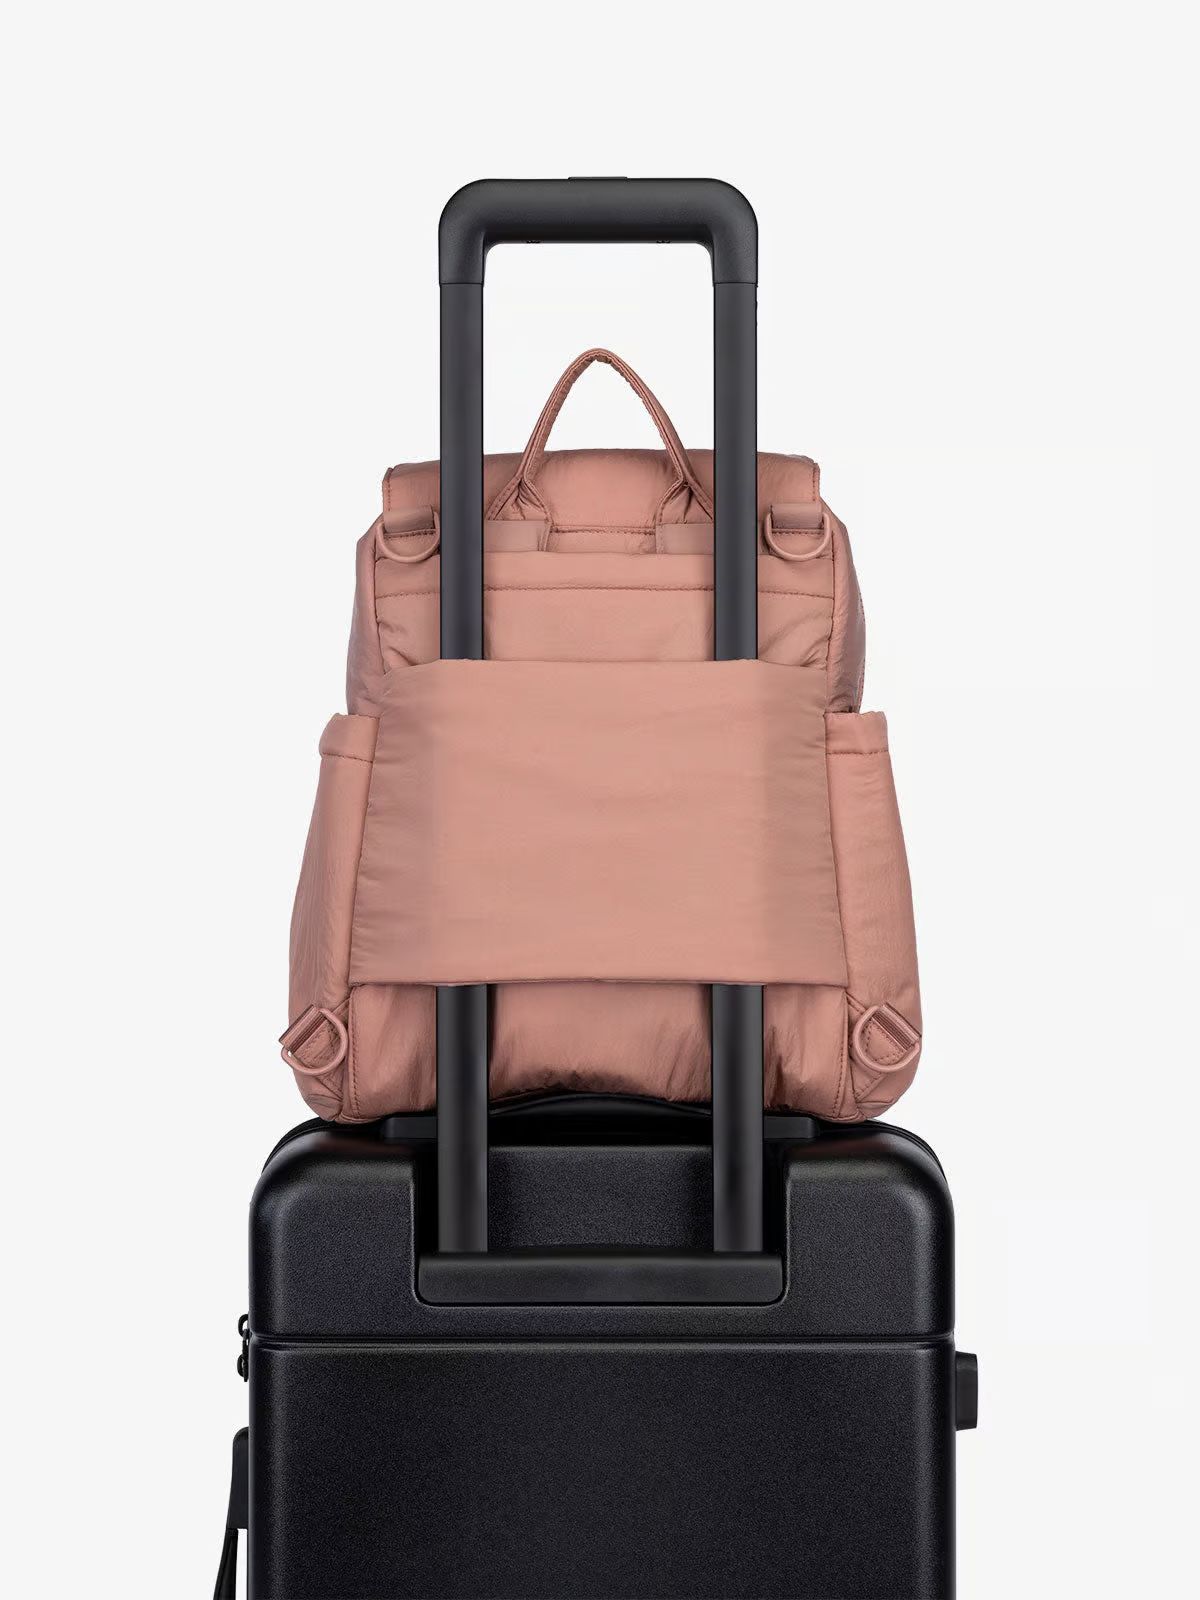 Convertible Mini Diaper Backpack | CALPAK Travel